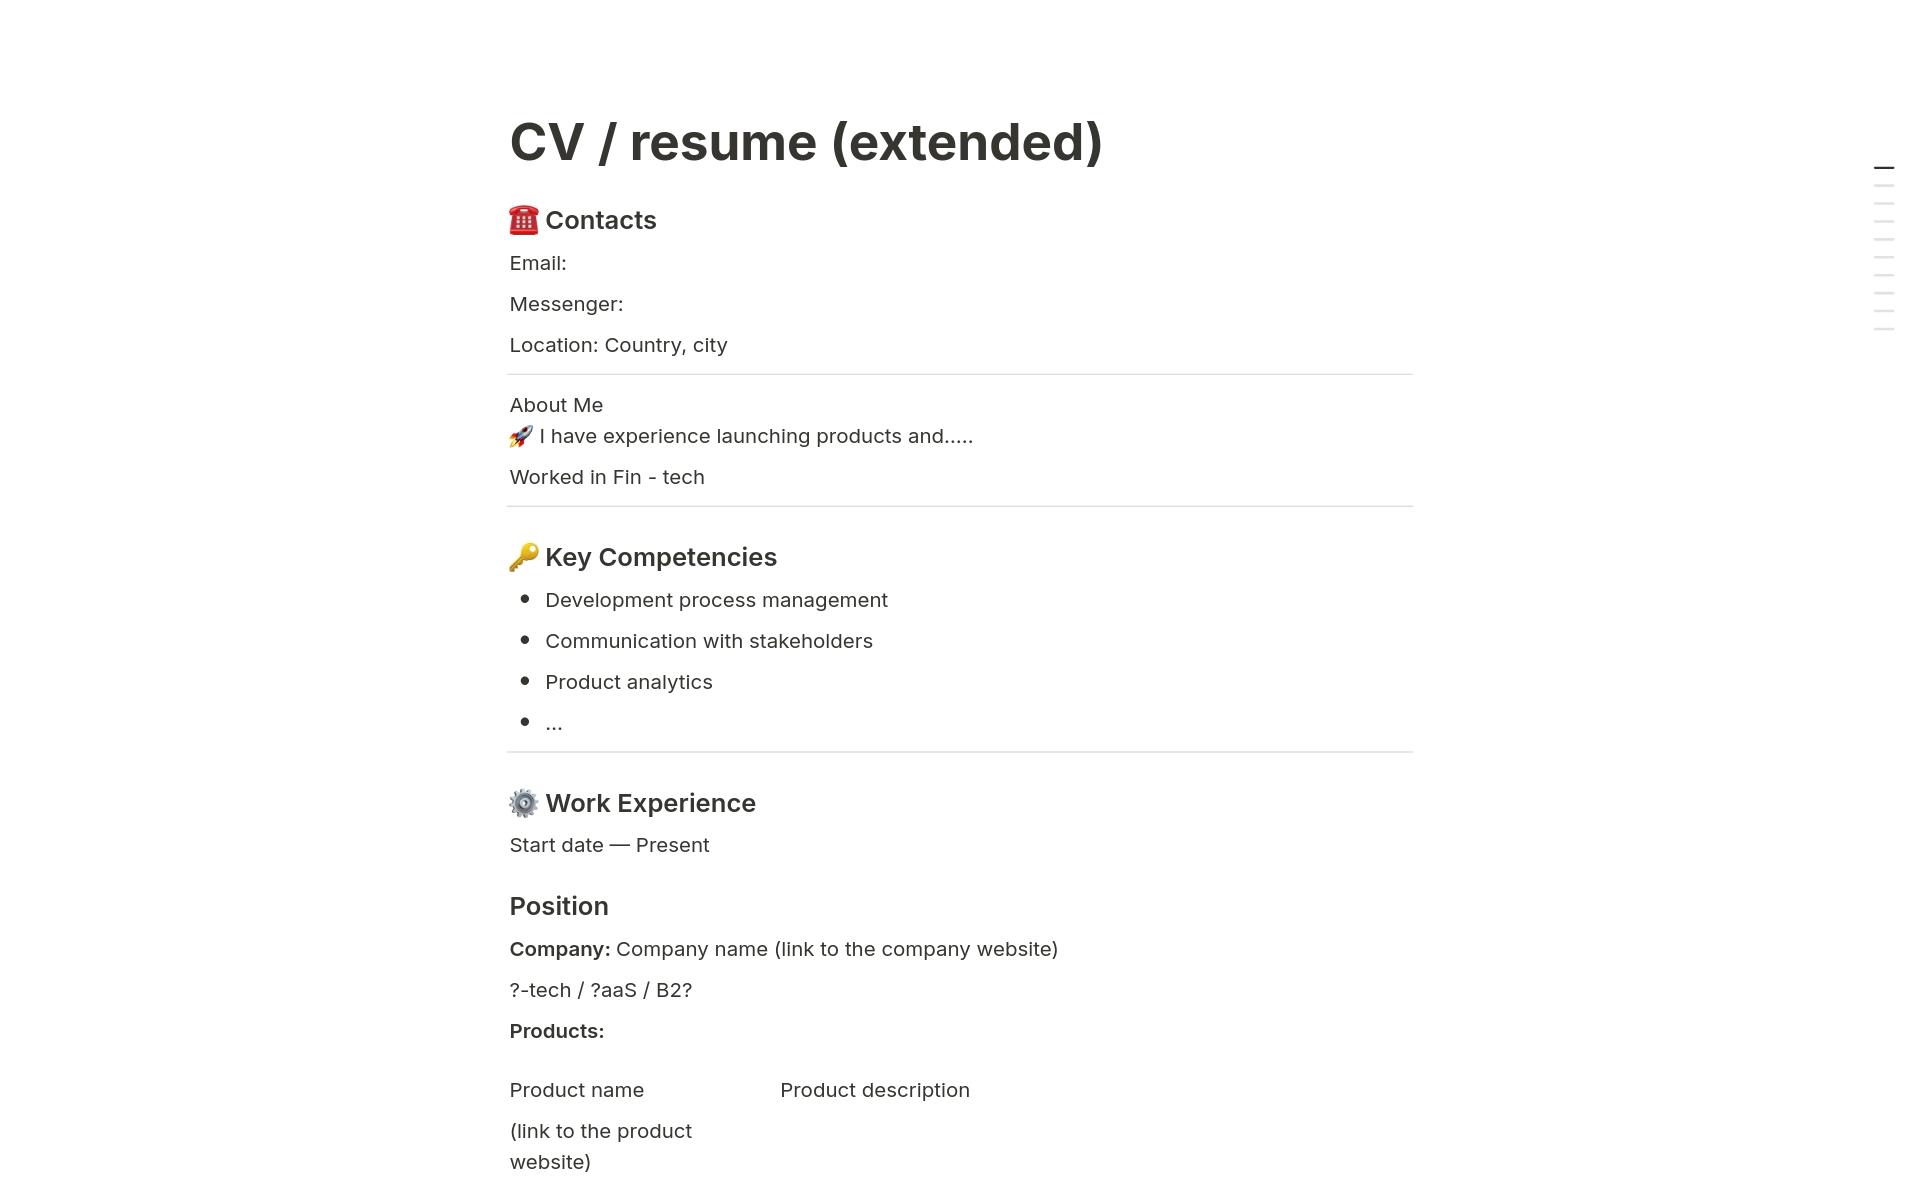 Uma prévia do modelo para CV / resume (extended) 